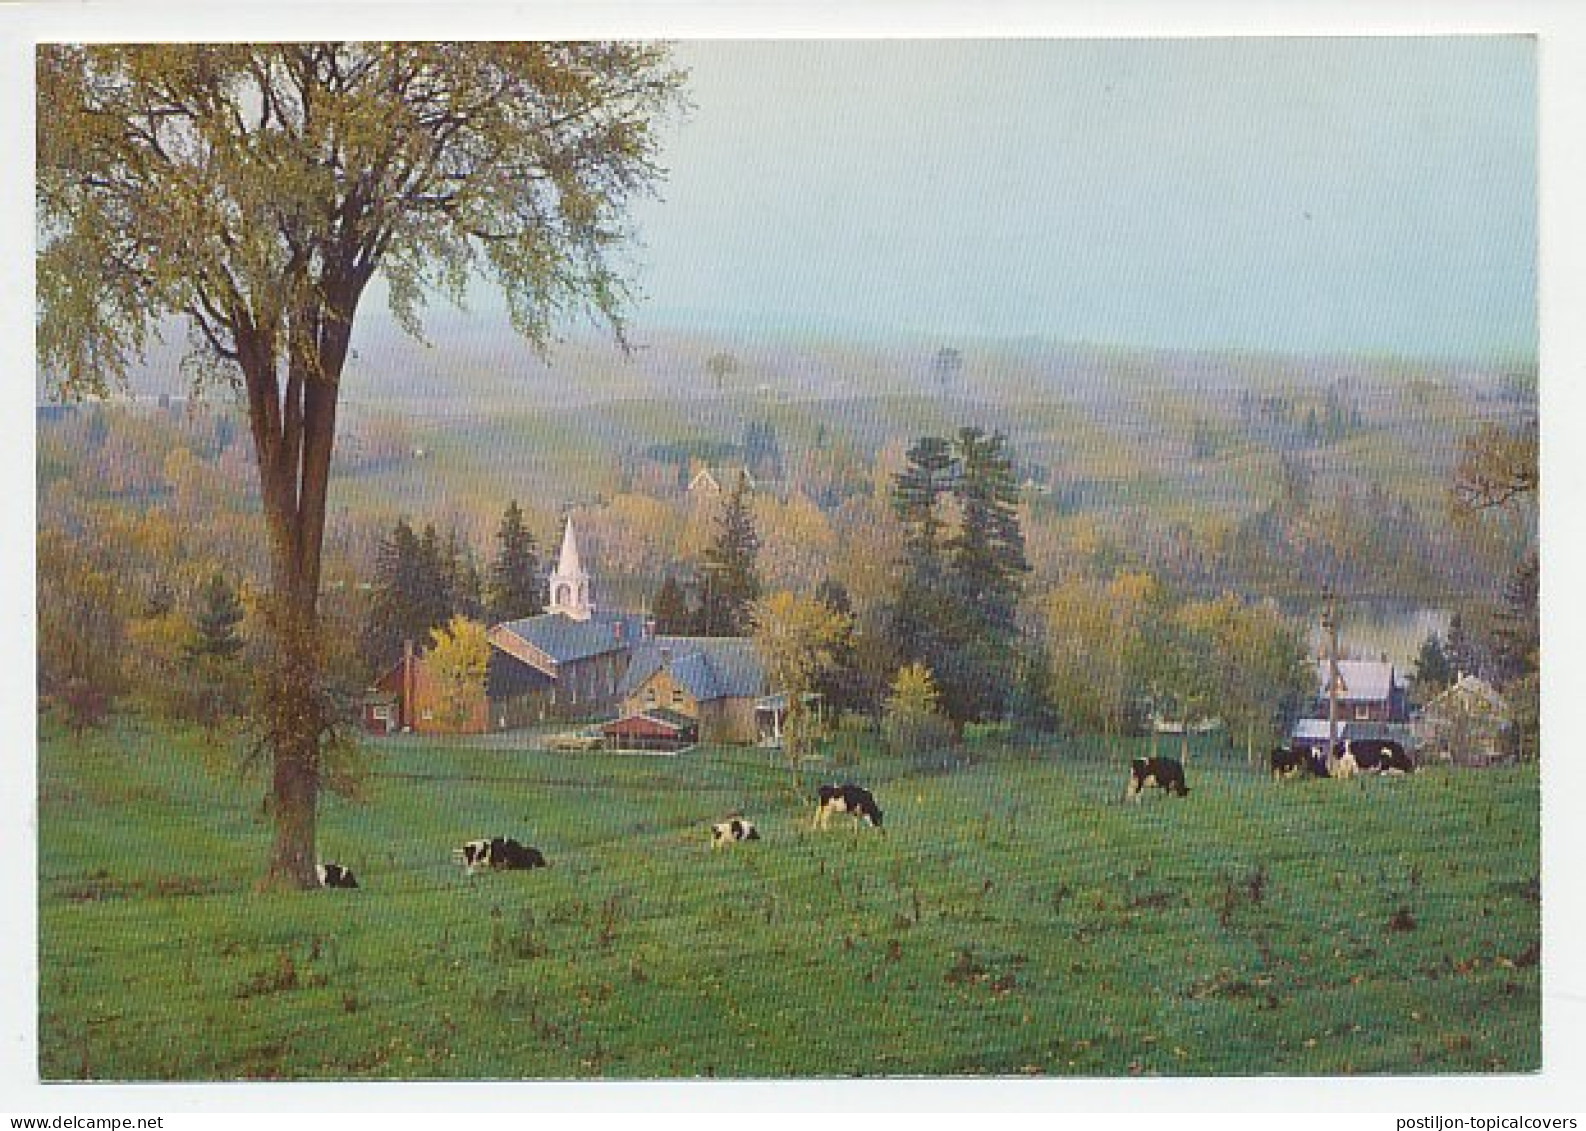 Postal Stationery Canada Cows - Farm - Church - Hoftiere